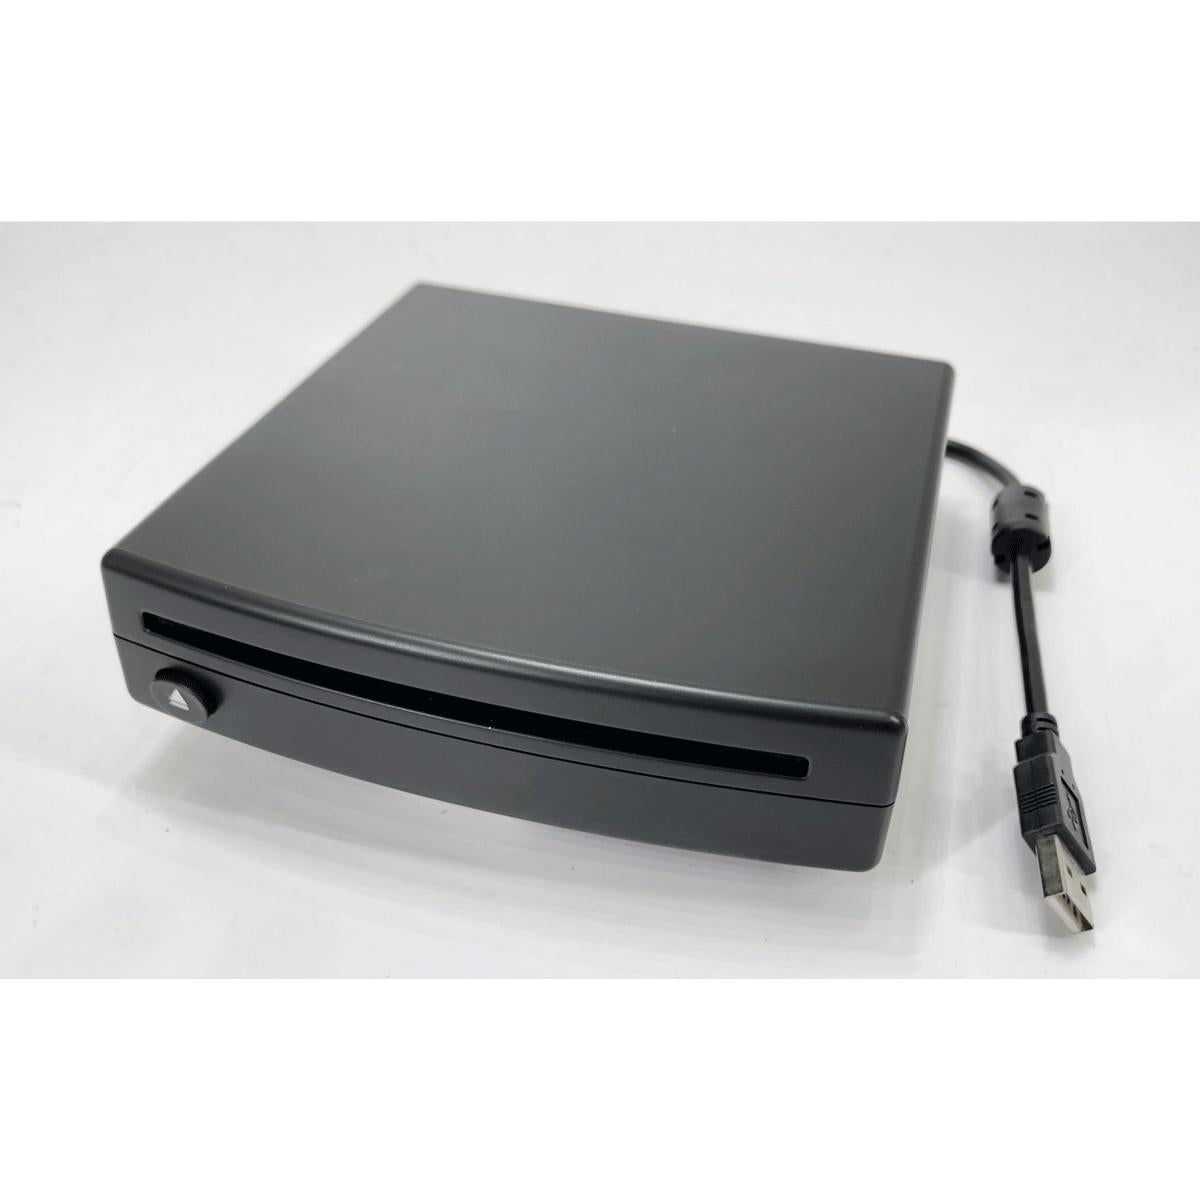 NAV-TV Kit 872 USB CD player (v2)